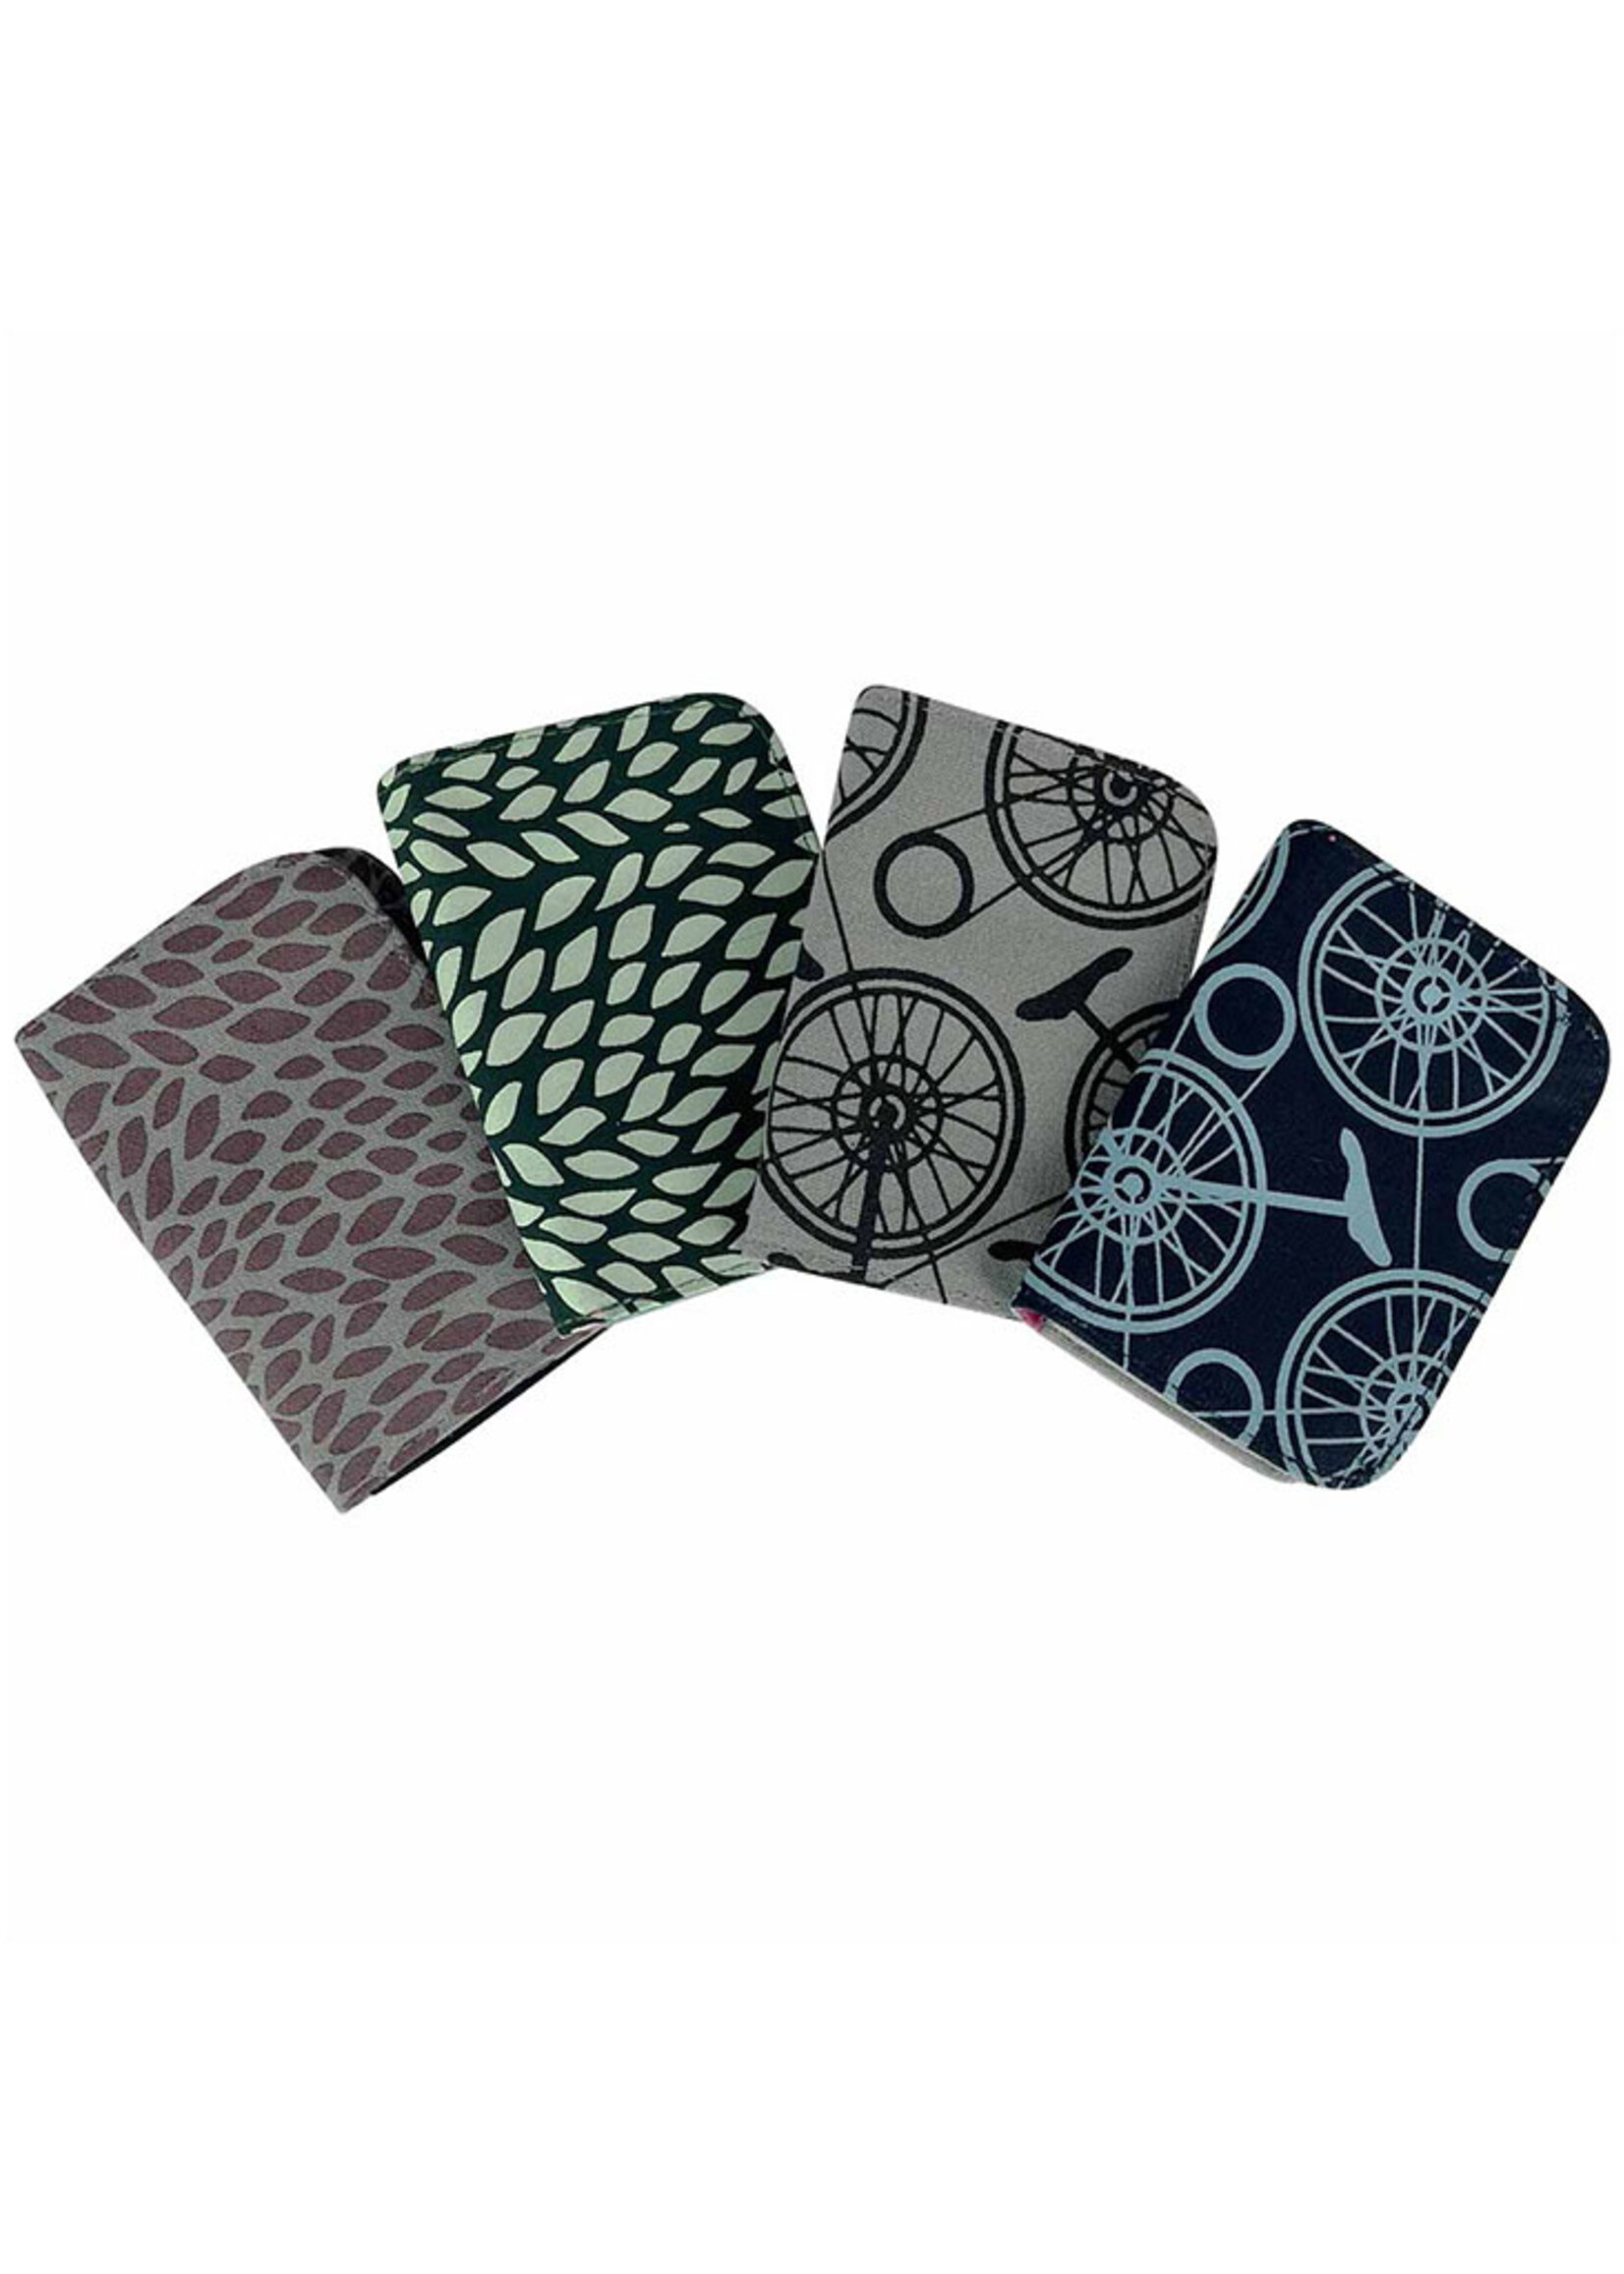 Malia Designs Cotton Canvas Cardholder